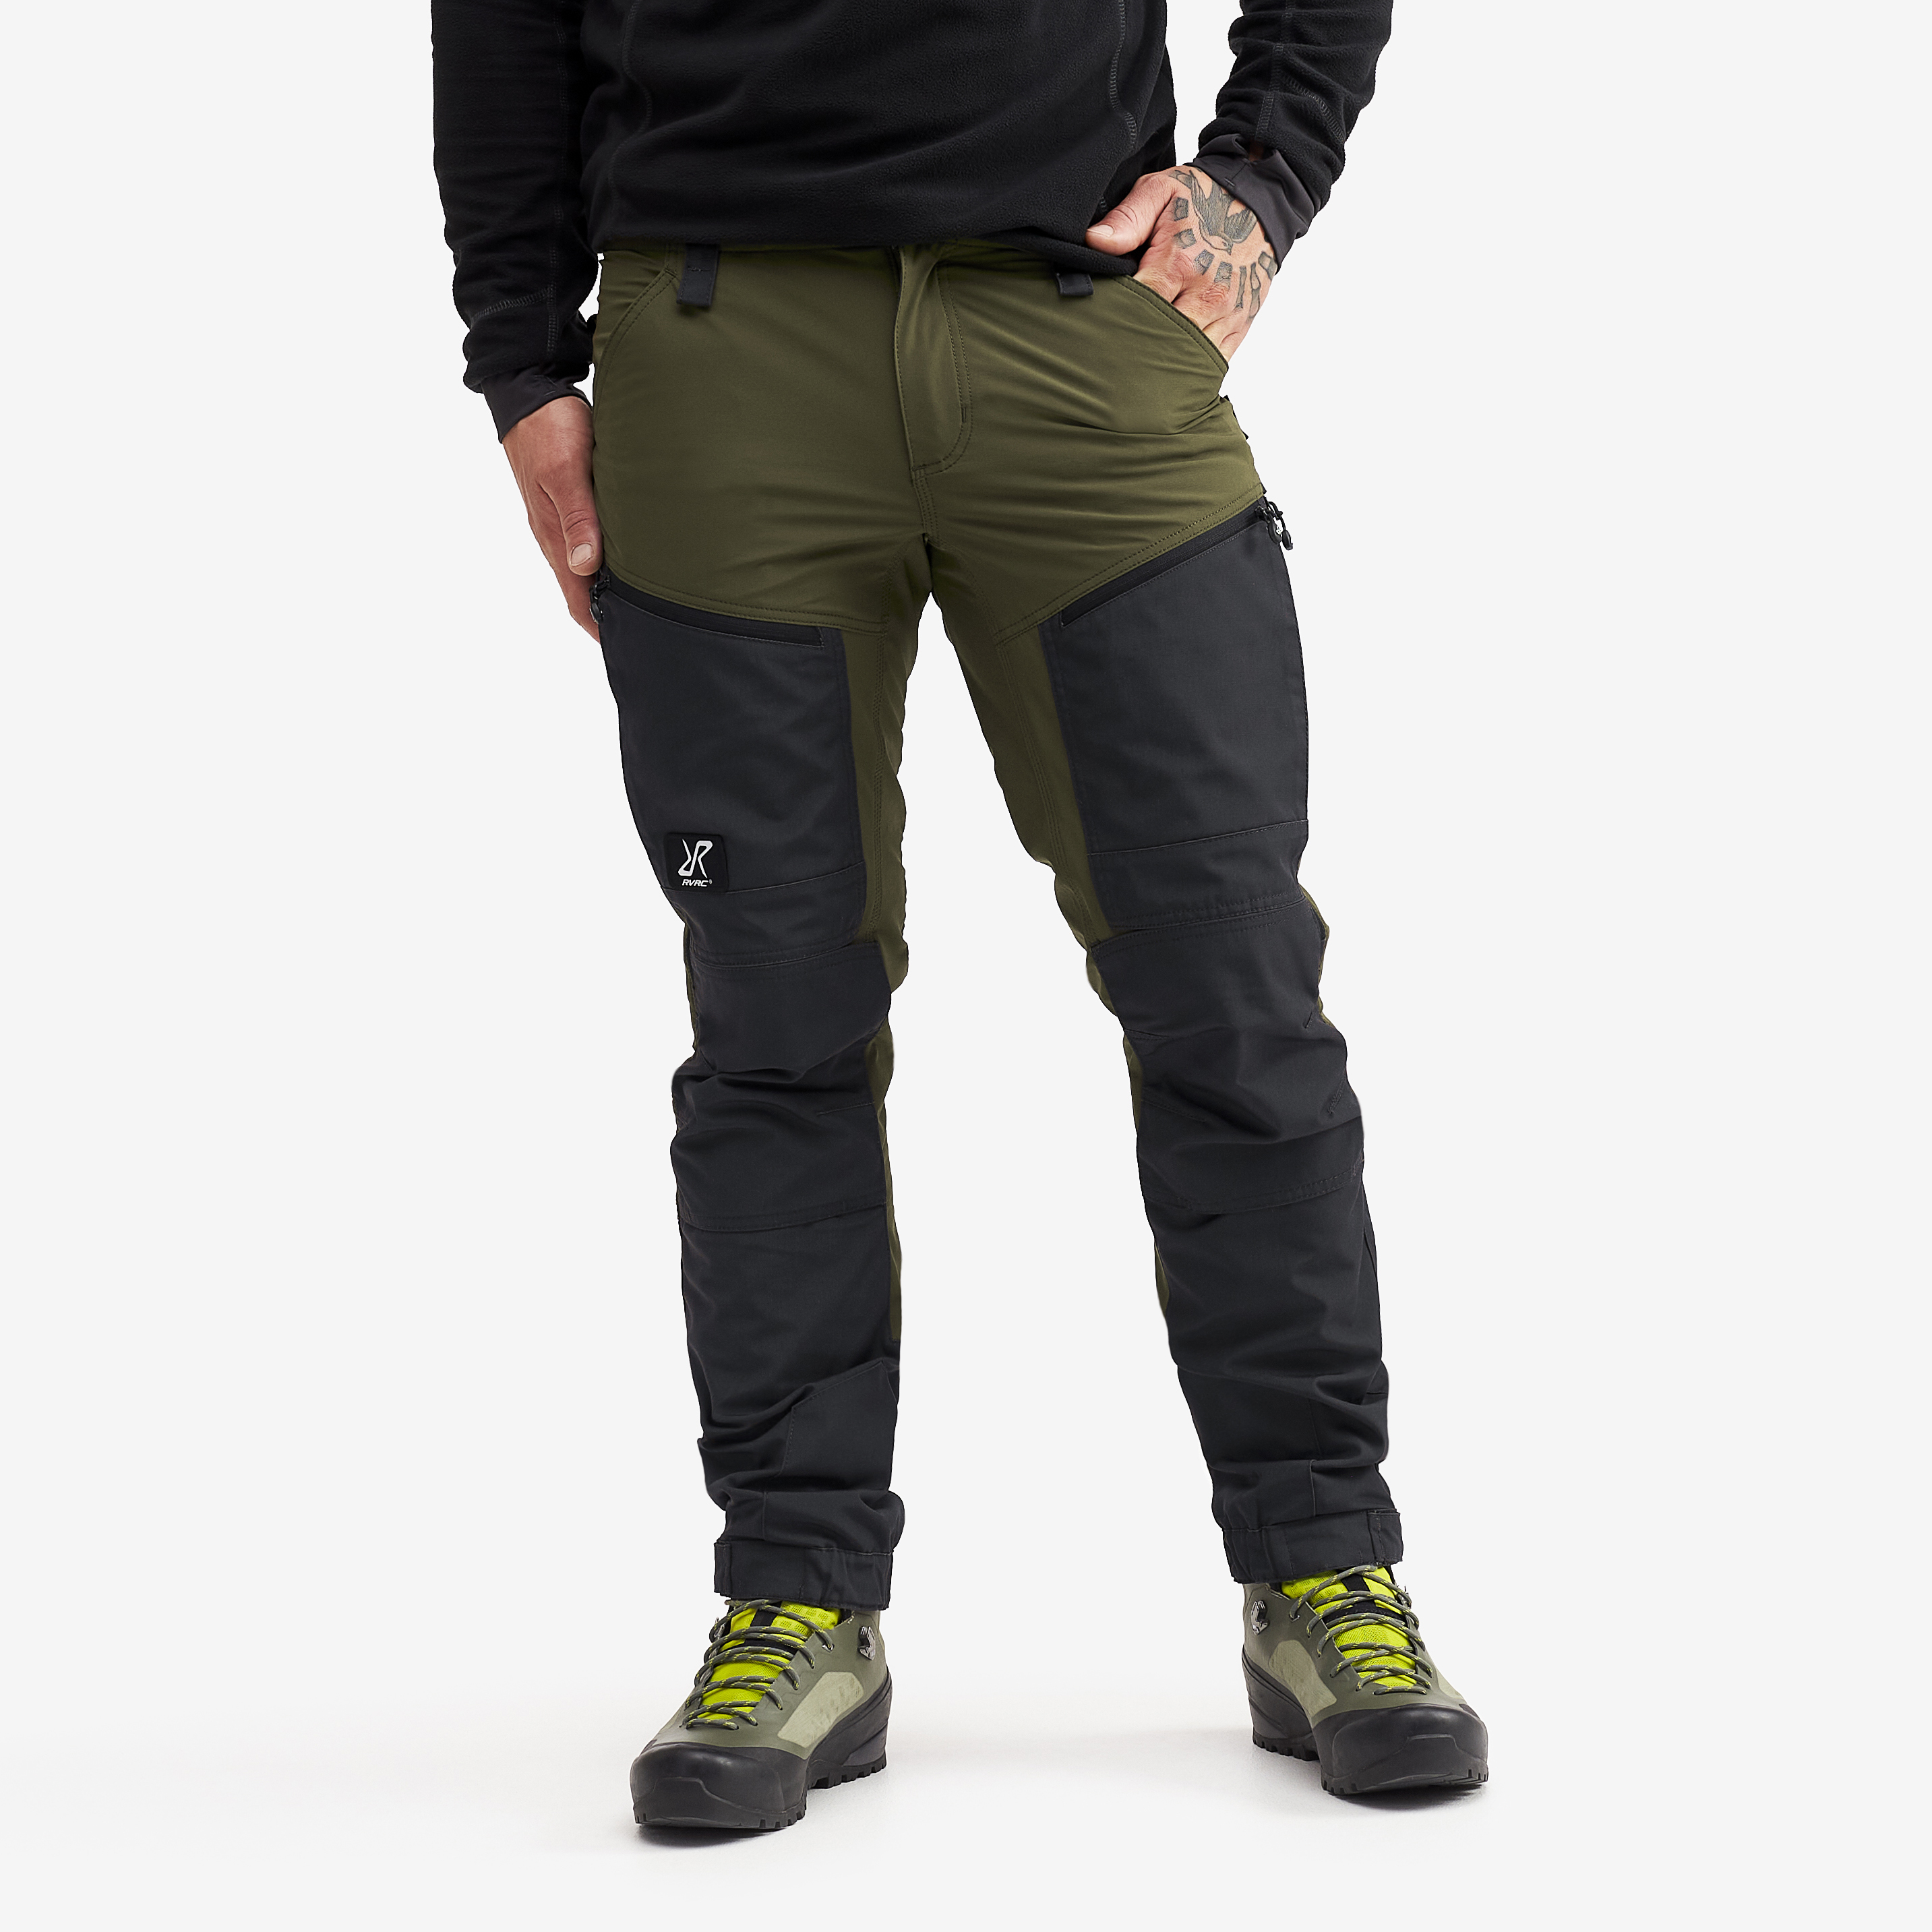 RVRC GP Pro Short vandrebukser for mænd i grøn